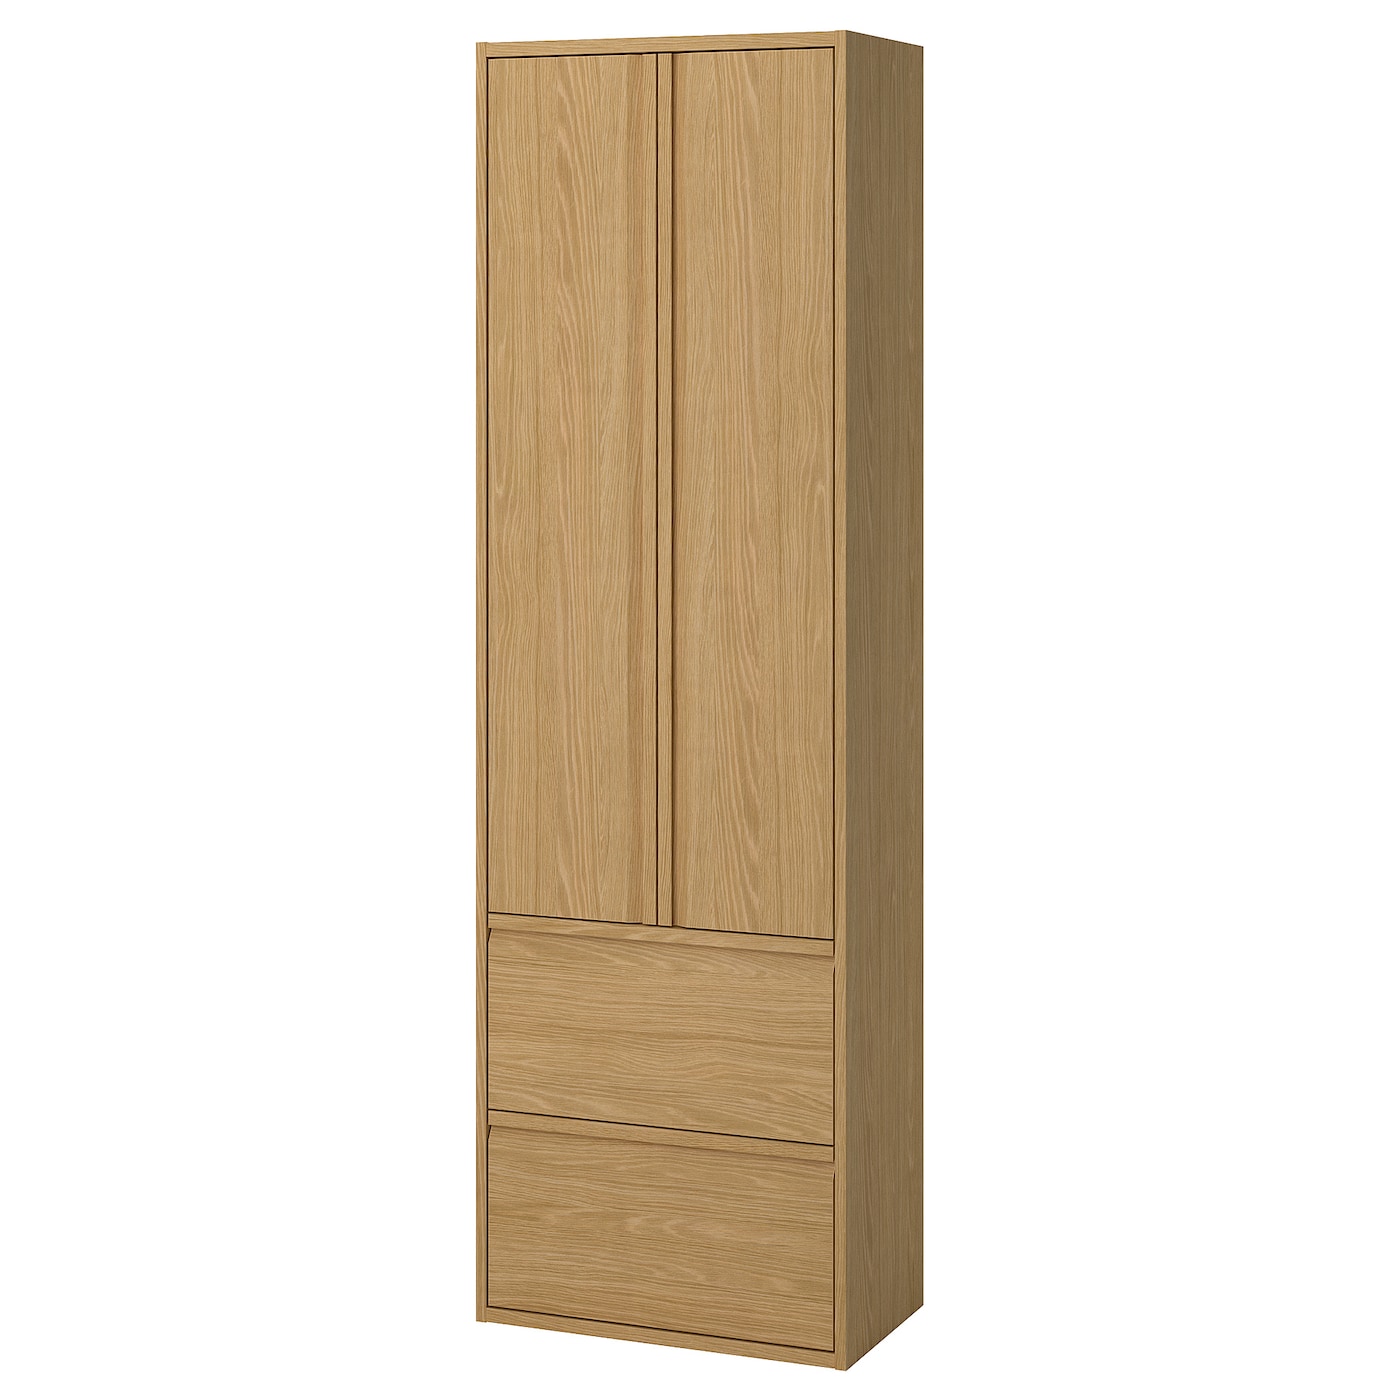 Высокий шкаф с дверцами/ящиками - IKEA ÄNGSJÖN/ANGDJON/ЭНГСЬЕН ИКЕА, 195х35х60 см, коричневый